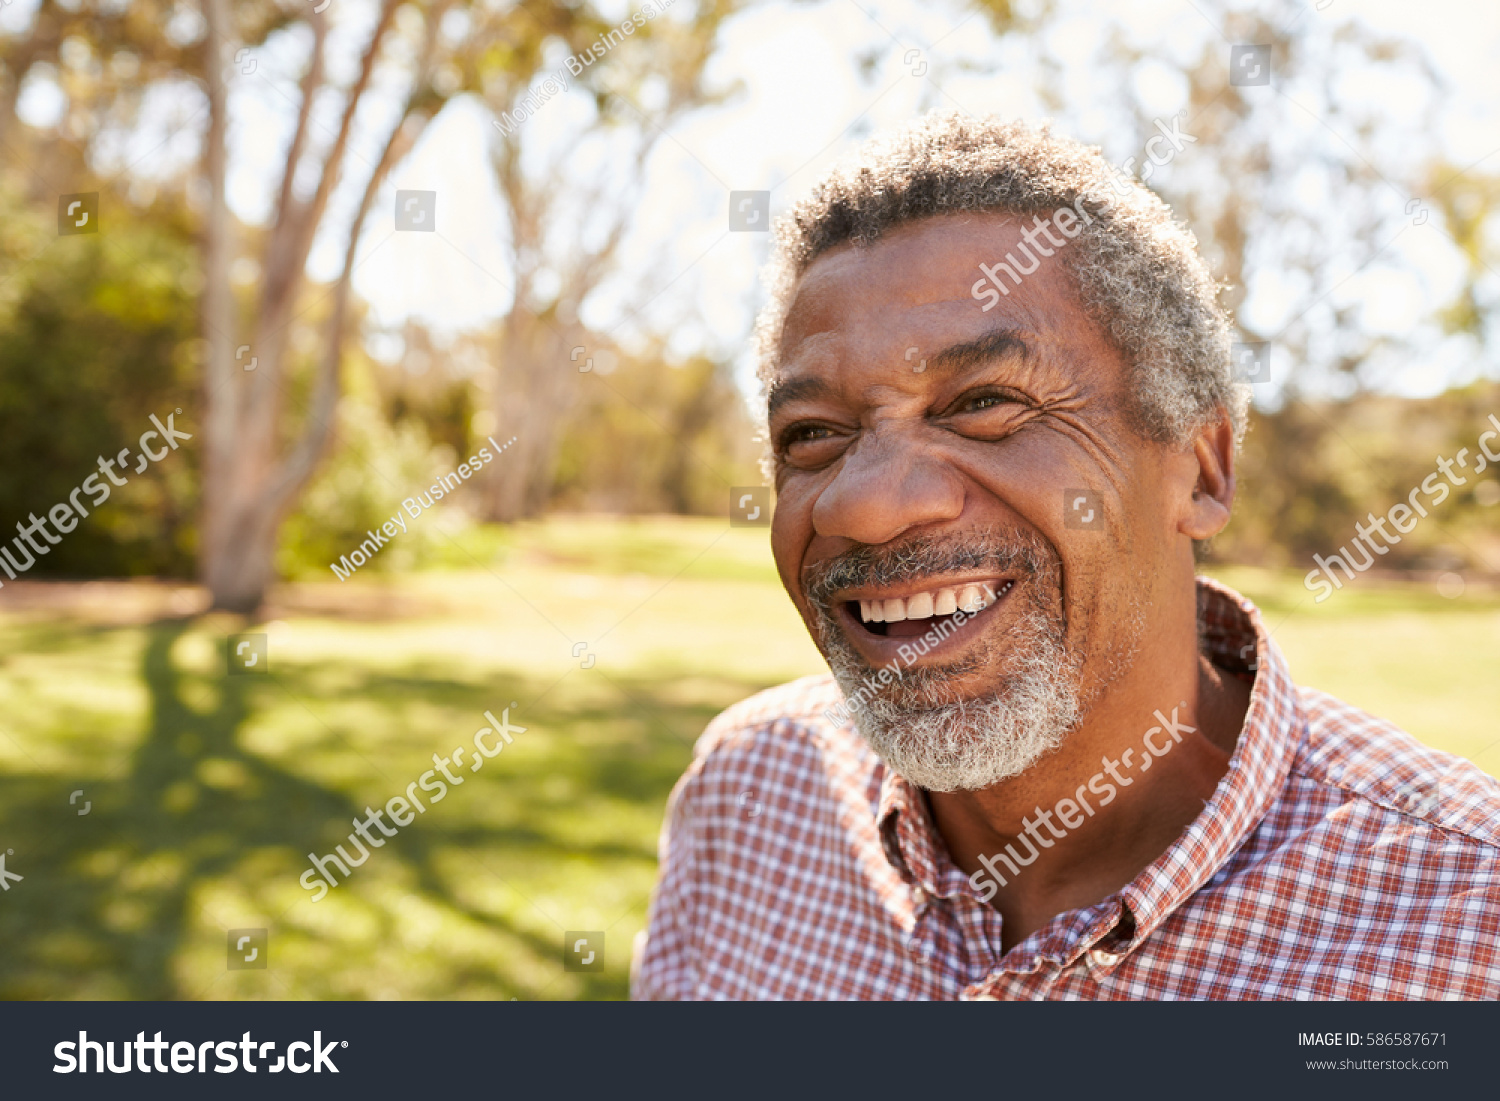 Outdoor Head Shoulders Shot Mature Man Stock Photo Shutterstock